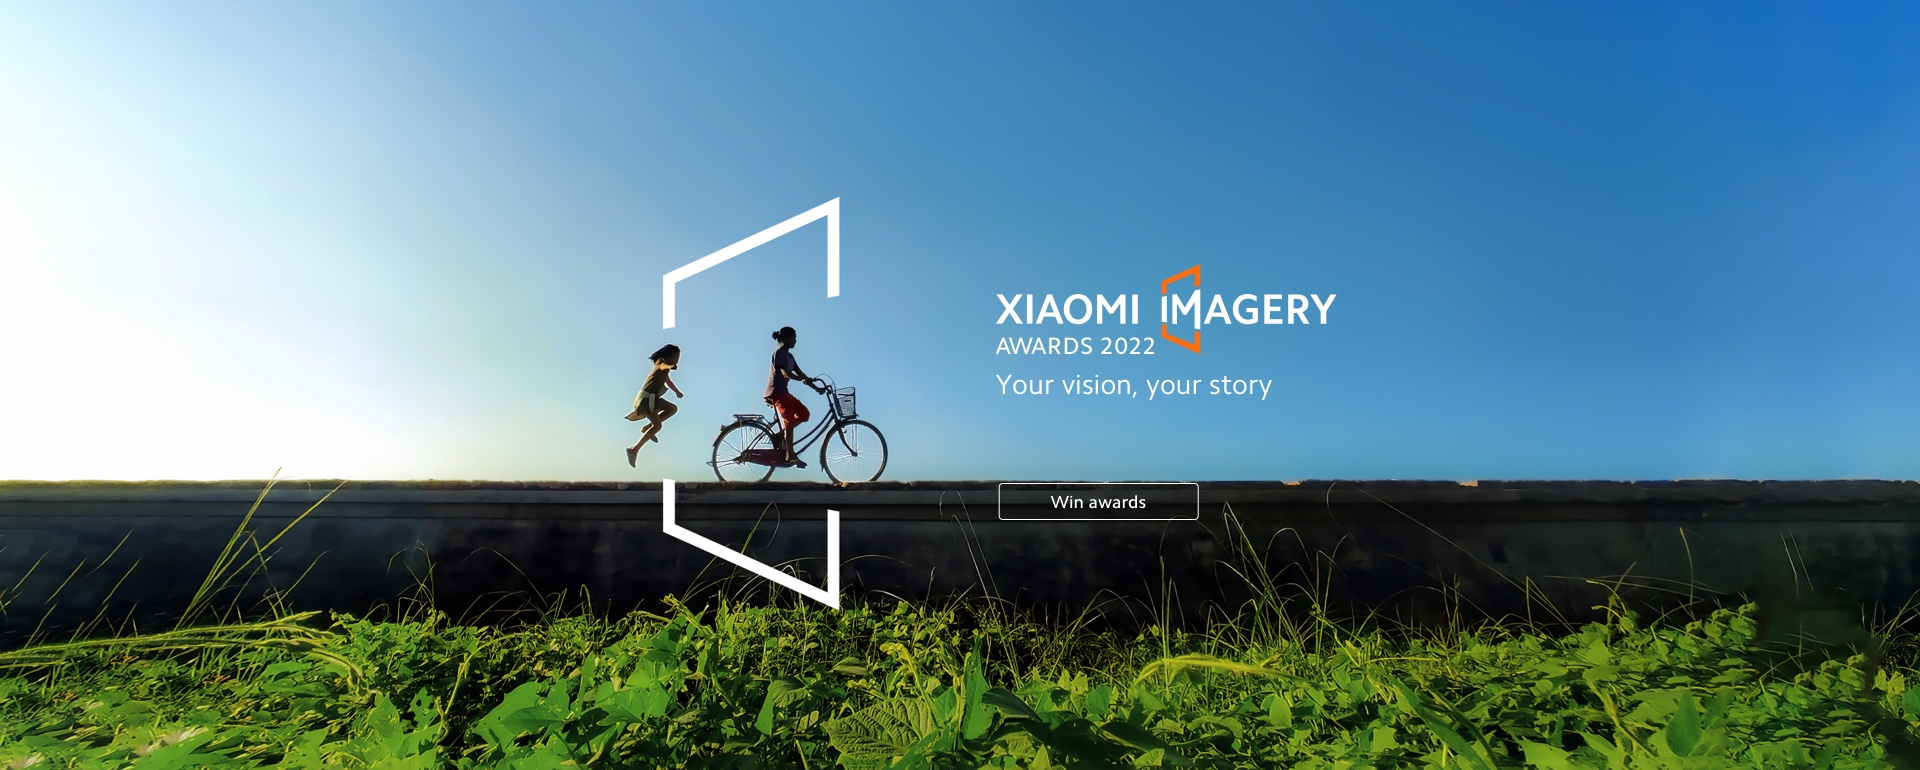 xiaomi-Imagery-awards